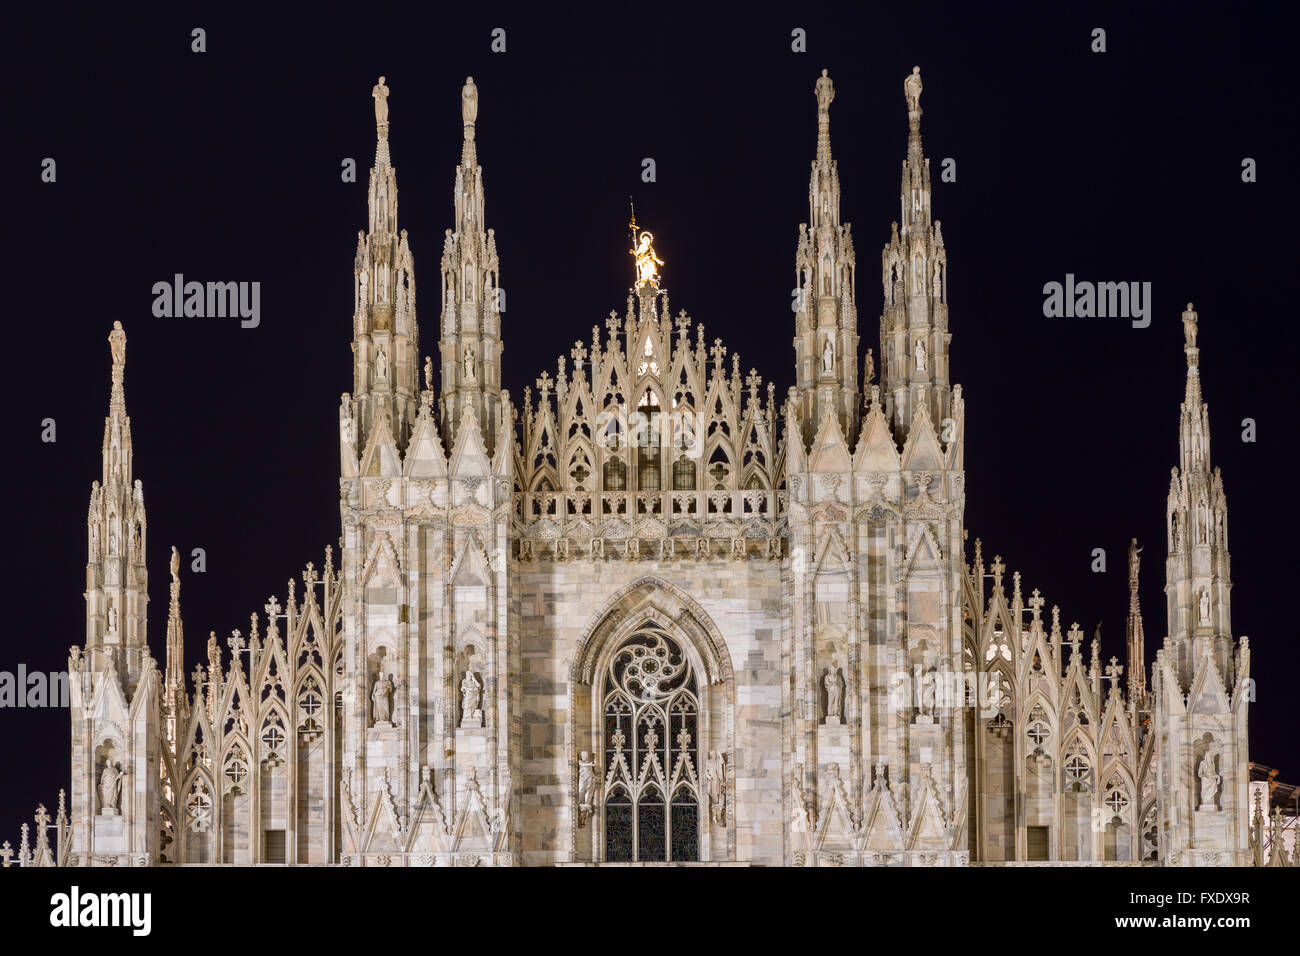 Pignon de la cathédrale de Milan dans la nuit, la Piazza del Duomo, Milan, Italie Banque D'Images